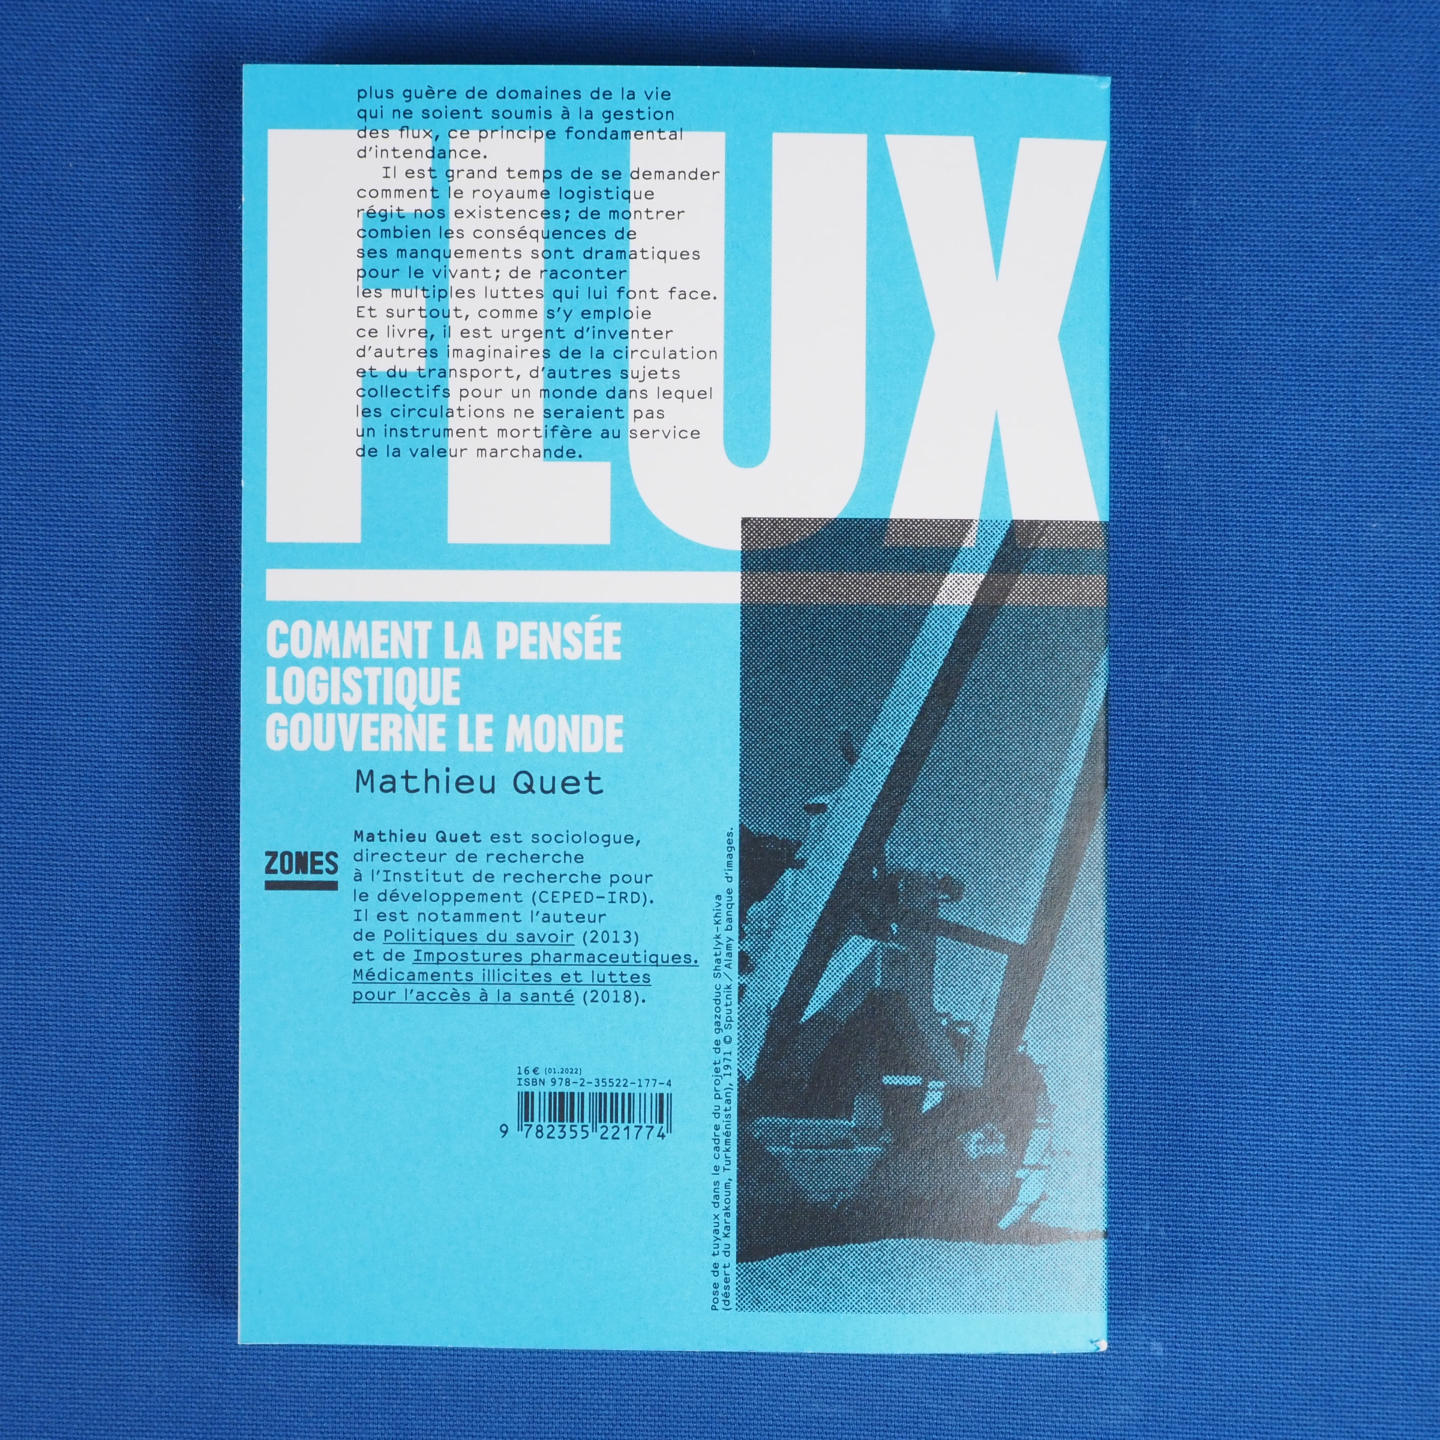 Book 'Flux: Comment la pensée logistique gouverne le monde' by Mathieu Quet